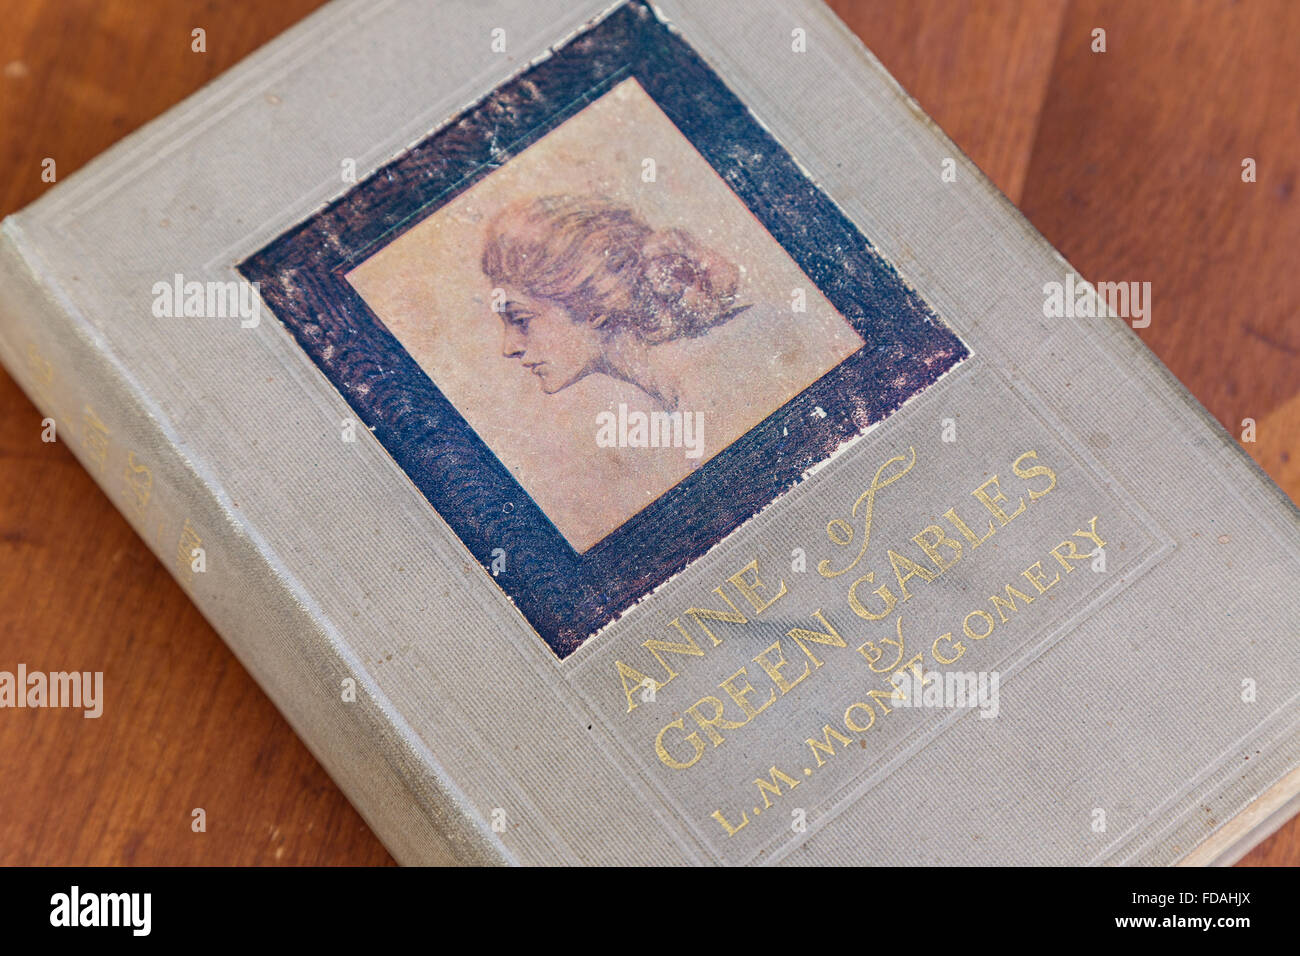 Primera edición, copia de Anne de green gables por l. m. de Montgomery. Foto de stock